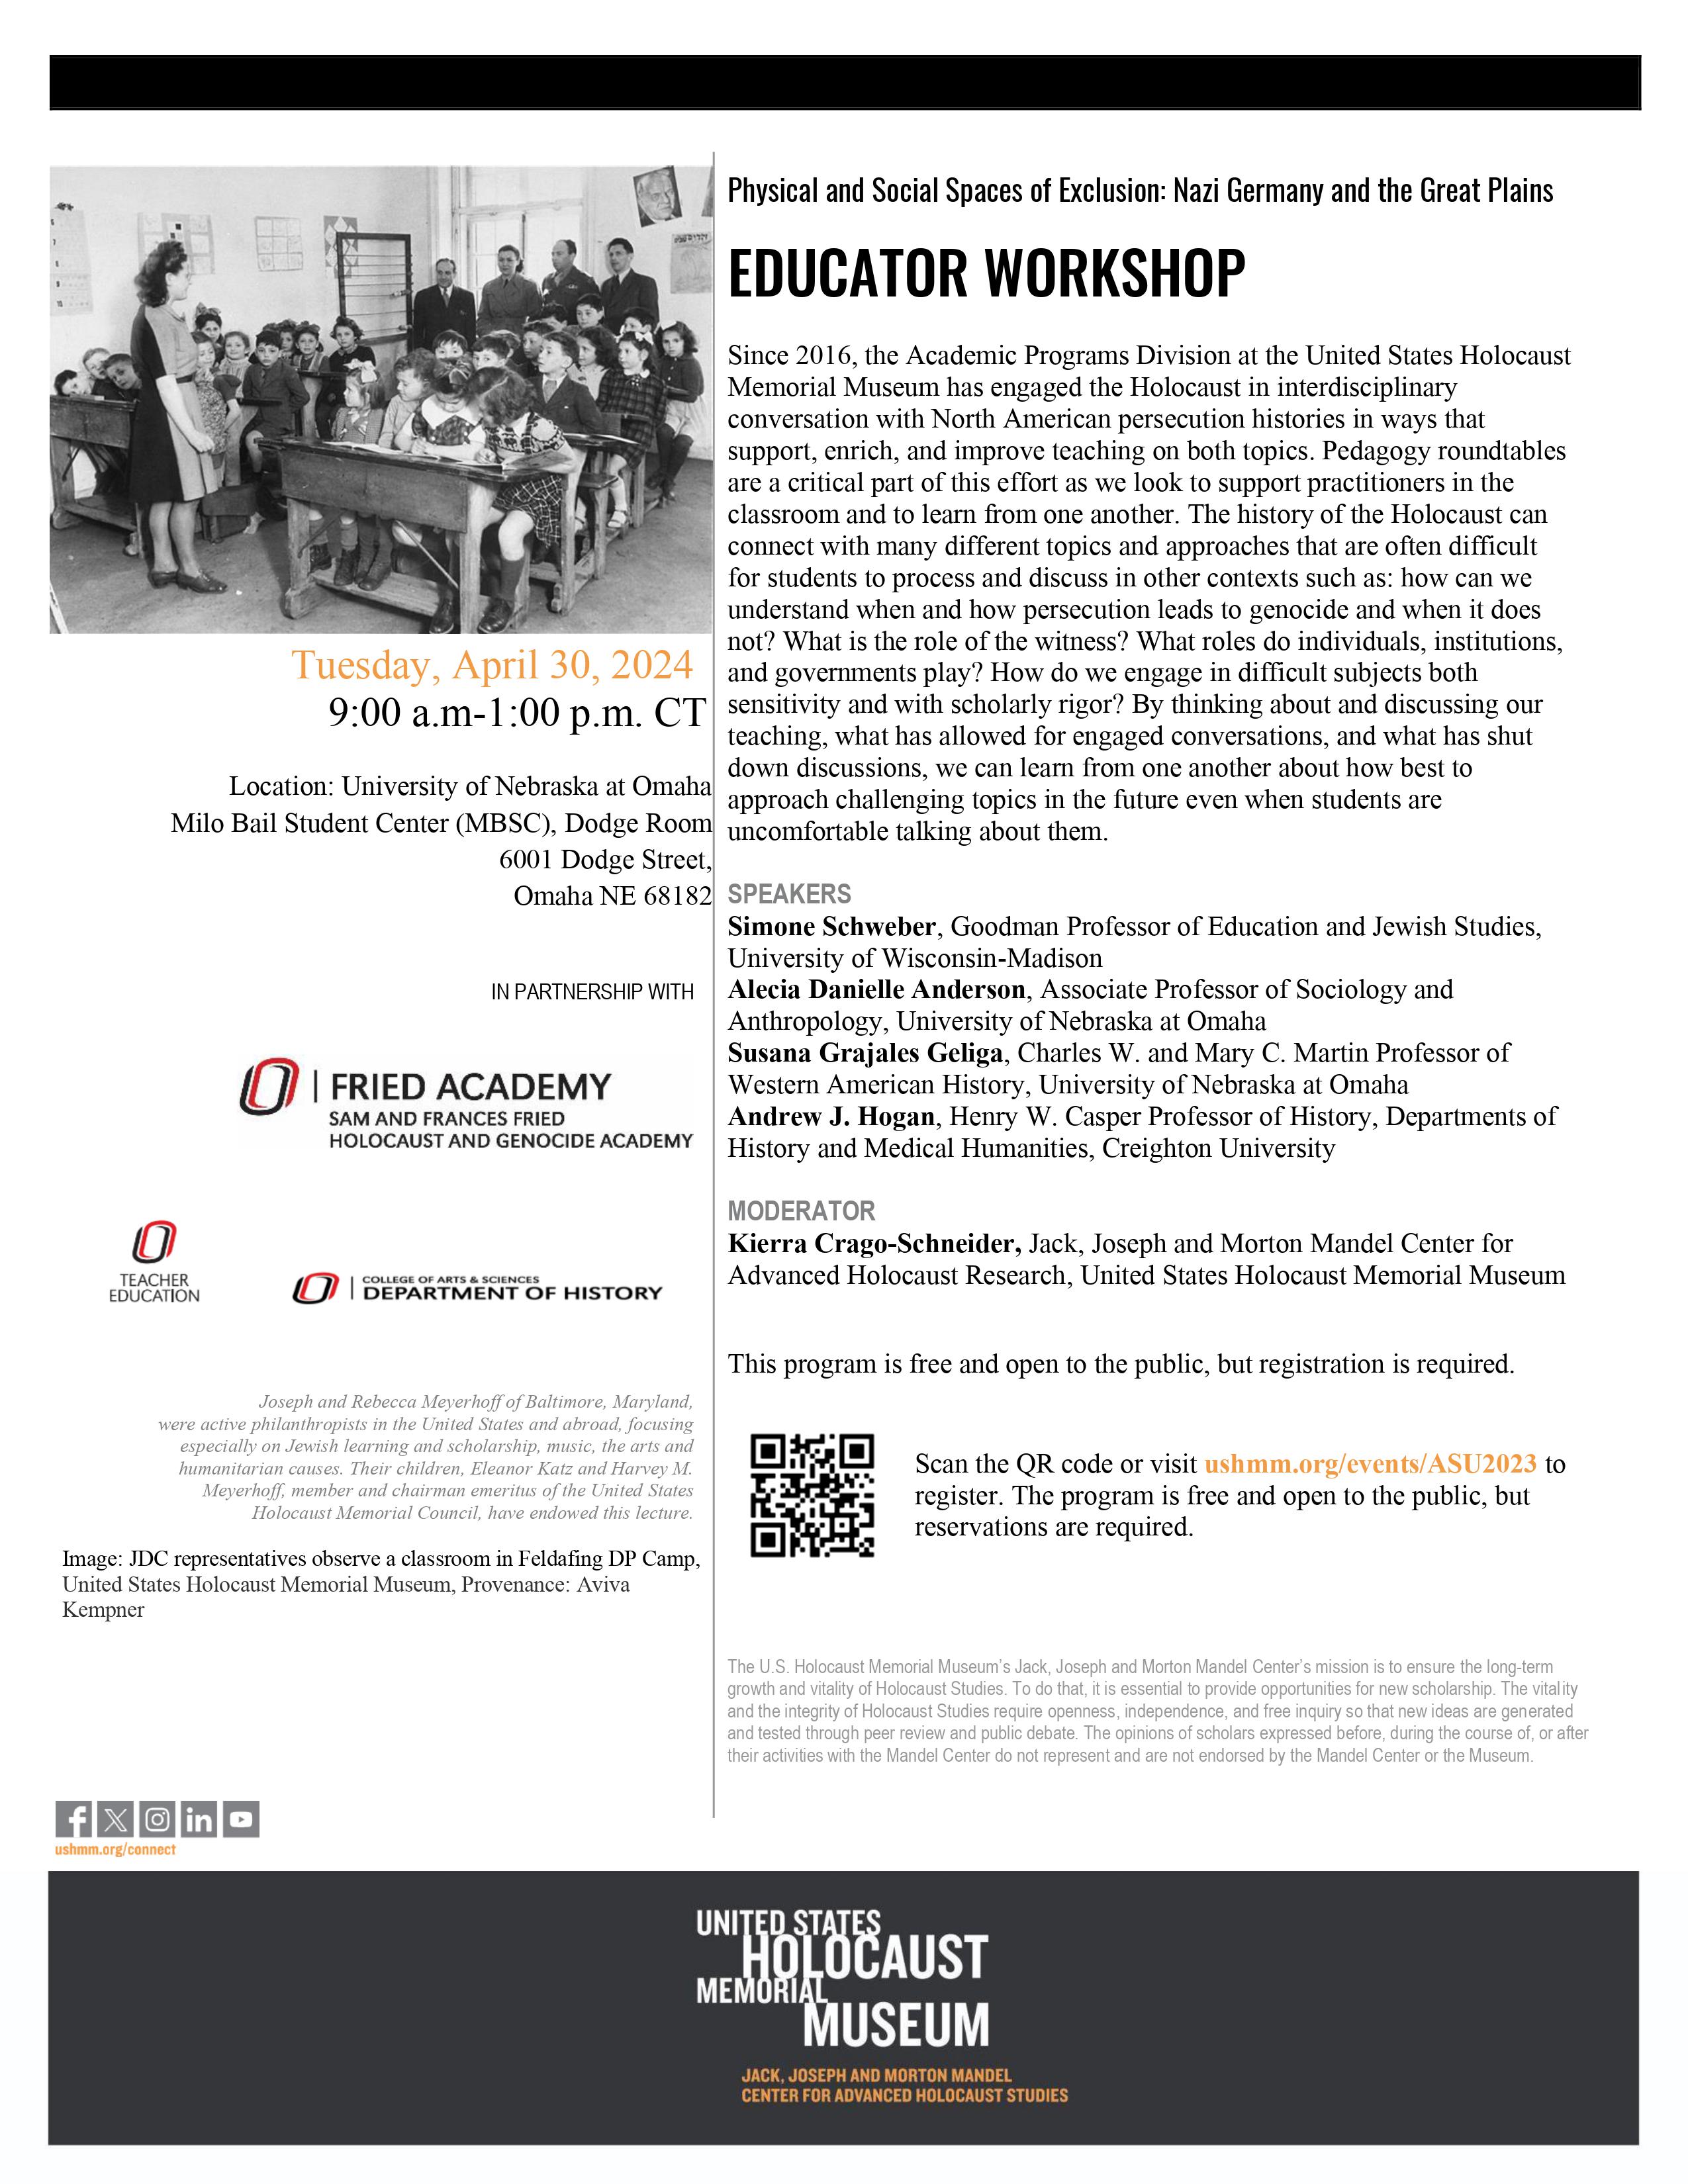 Educator Workshop flyer